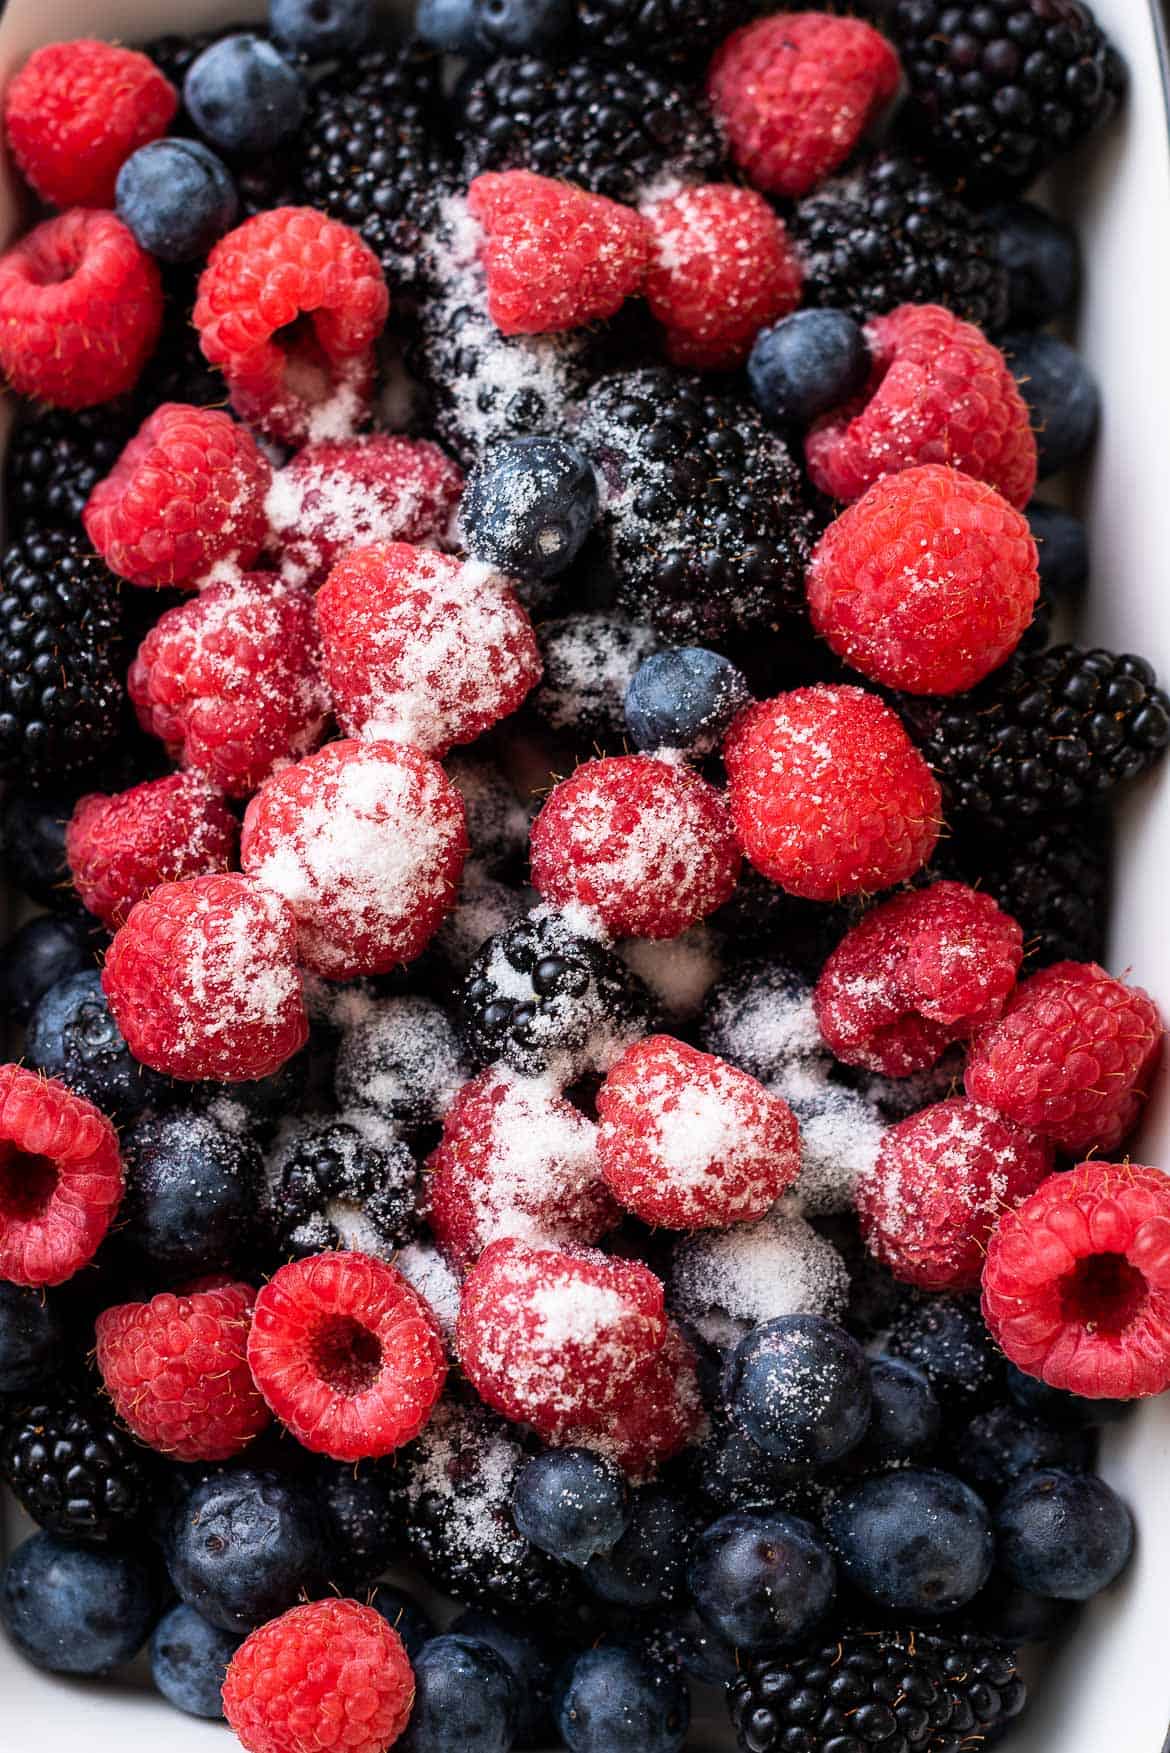 Raspberries, blueberries, blackberries, and sugar for compote.